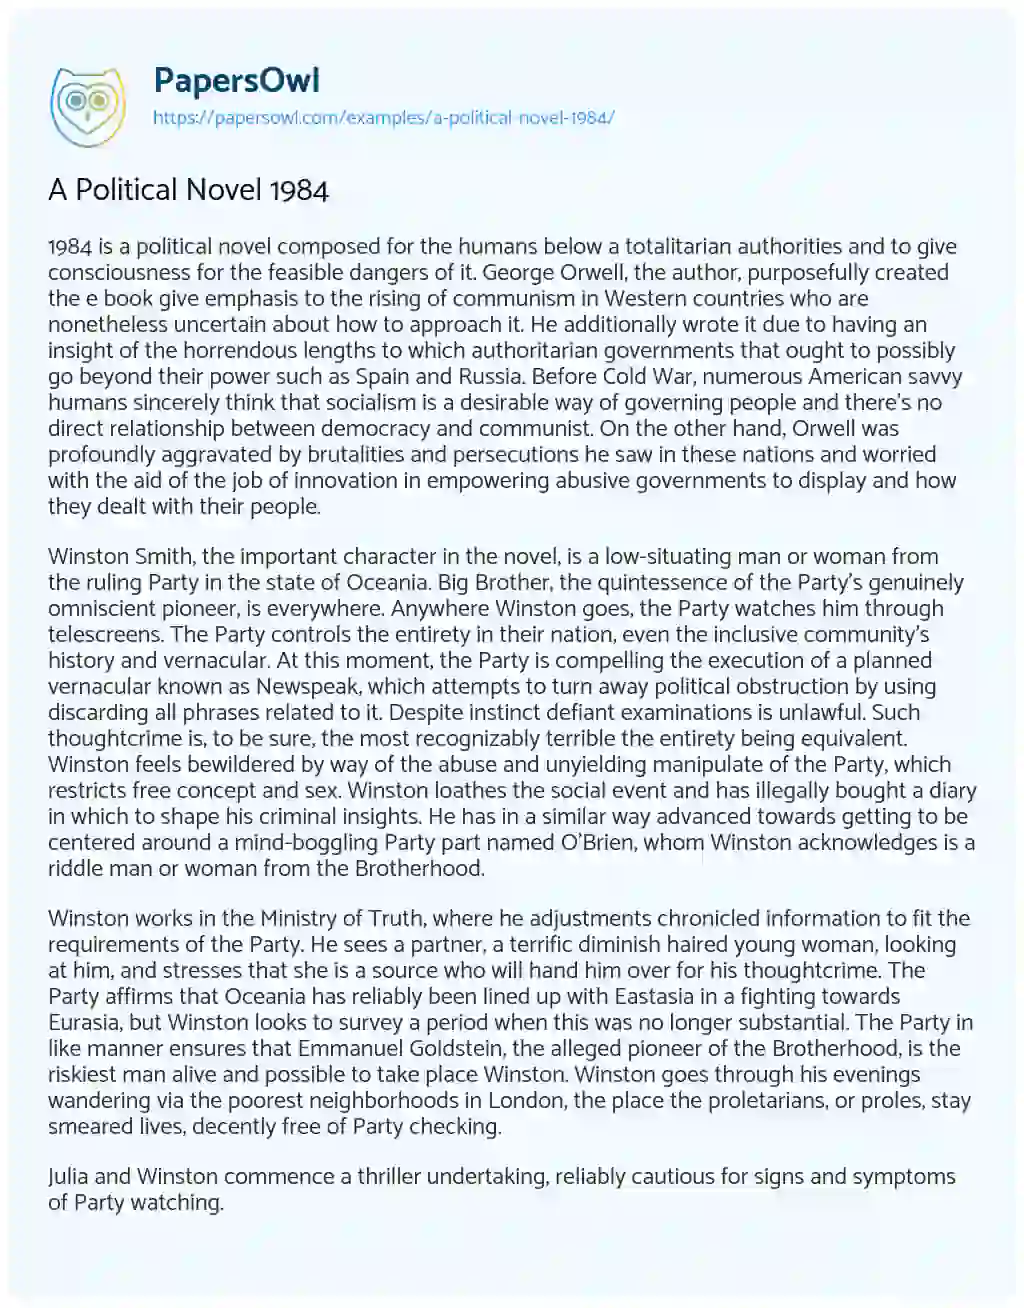 Essay on A Political Novel 1984